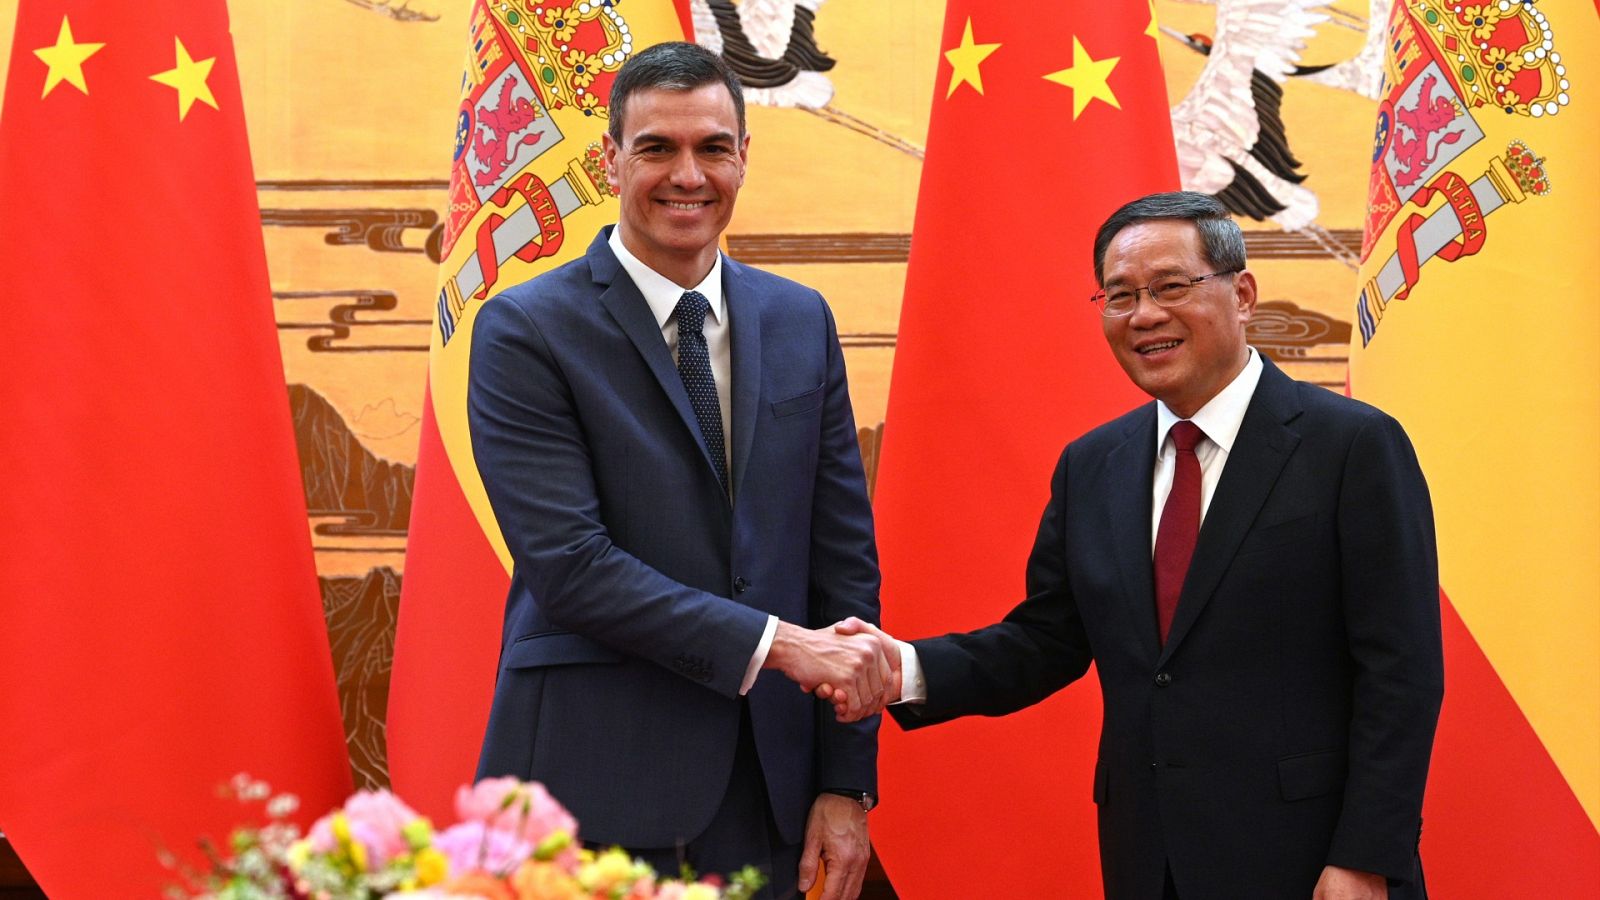 Sánchez mantiene un encuentro con el primer ministro chino antes de reunirse con Xi Jinping para "relanzar" relaciones